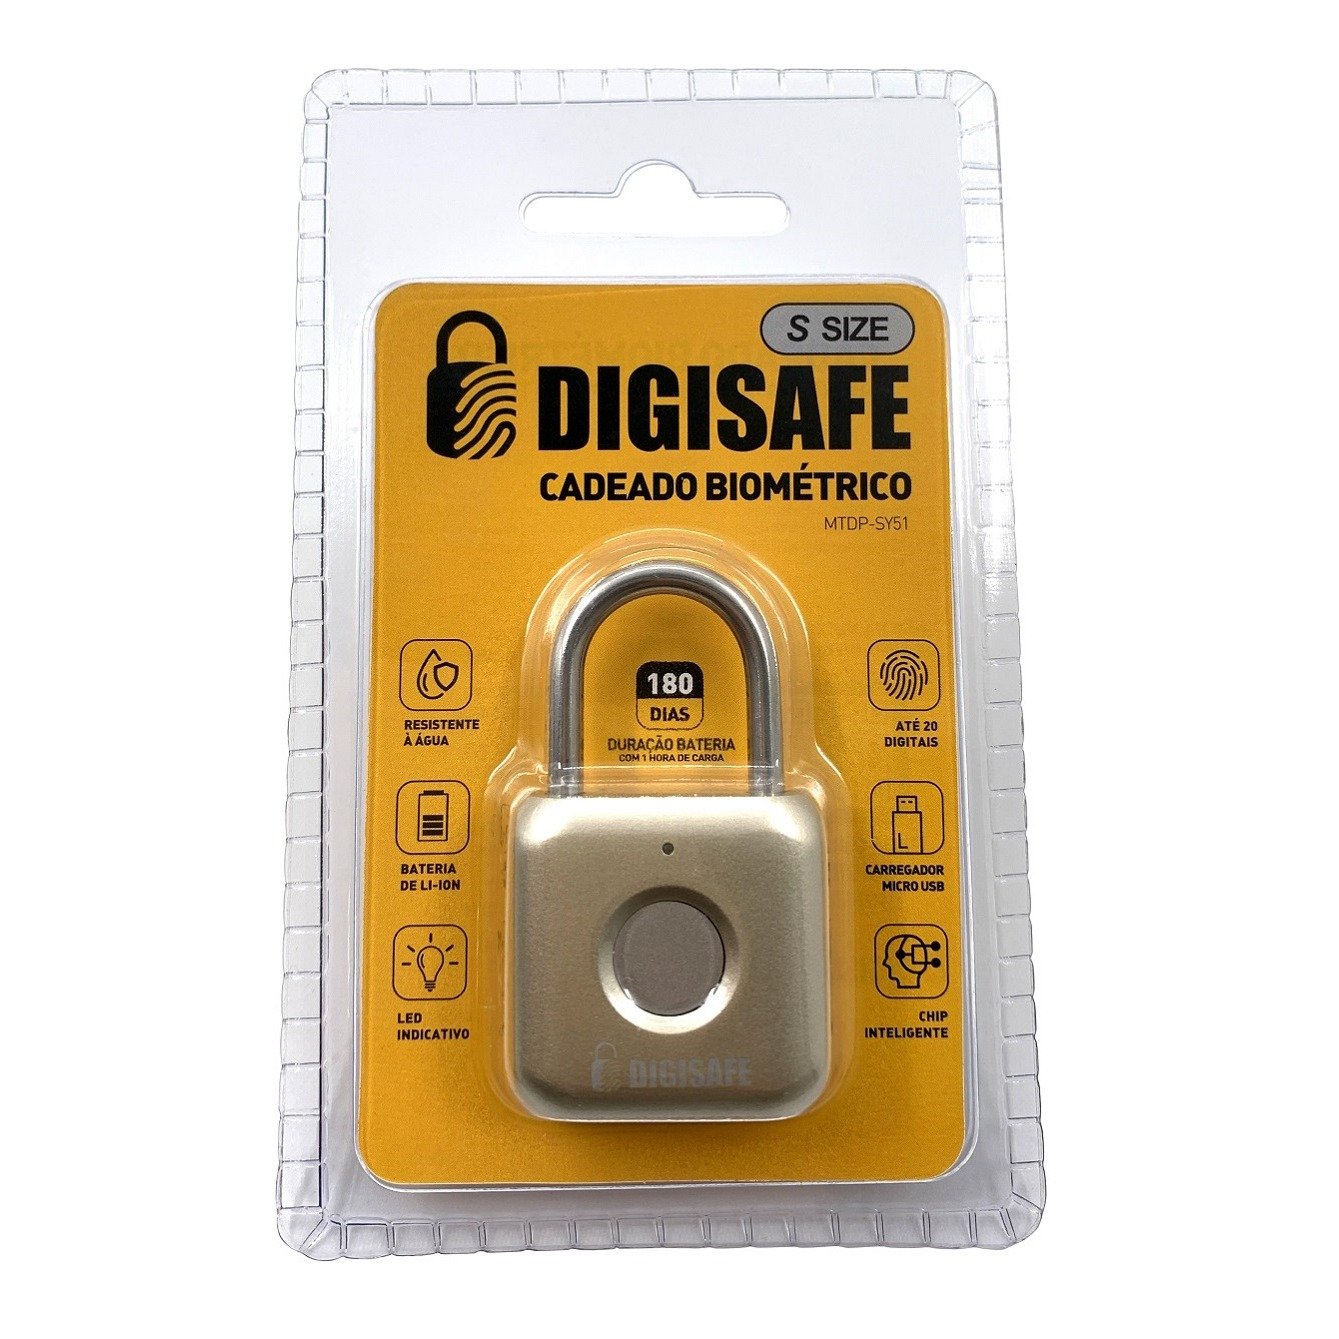 Cadeado com Biometria Digisafe - Modelo Dp-sy51 - 5